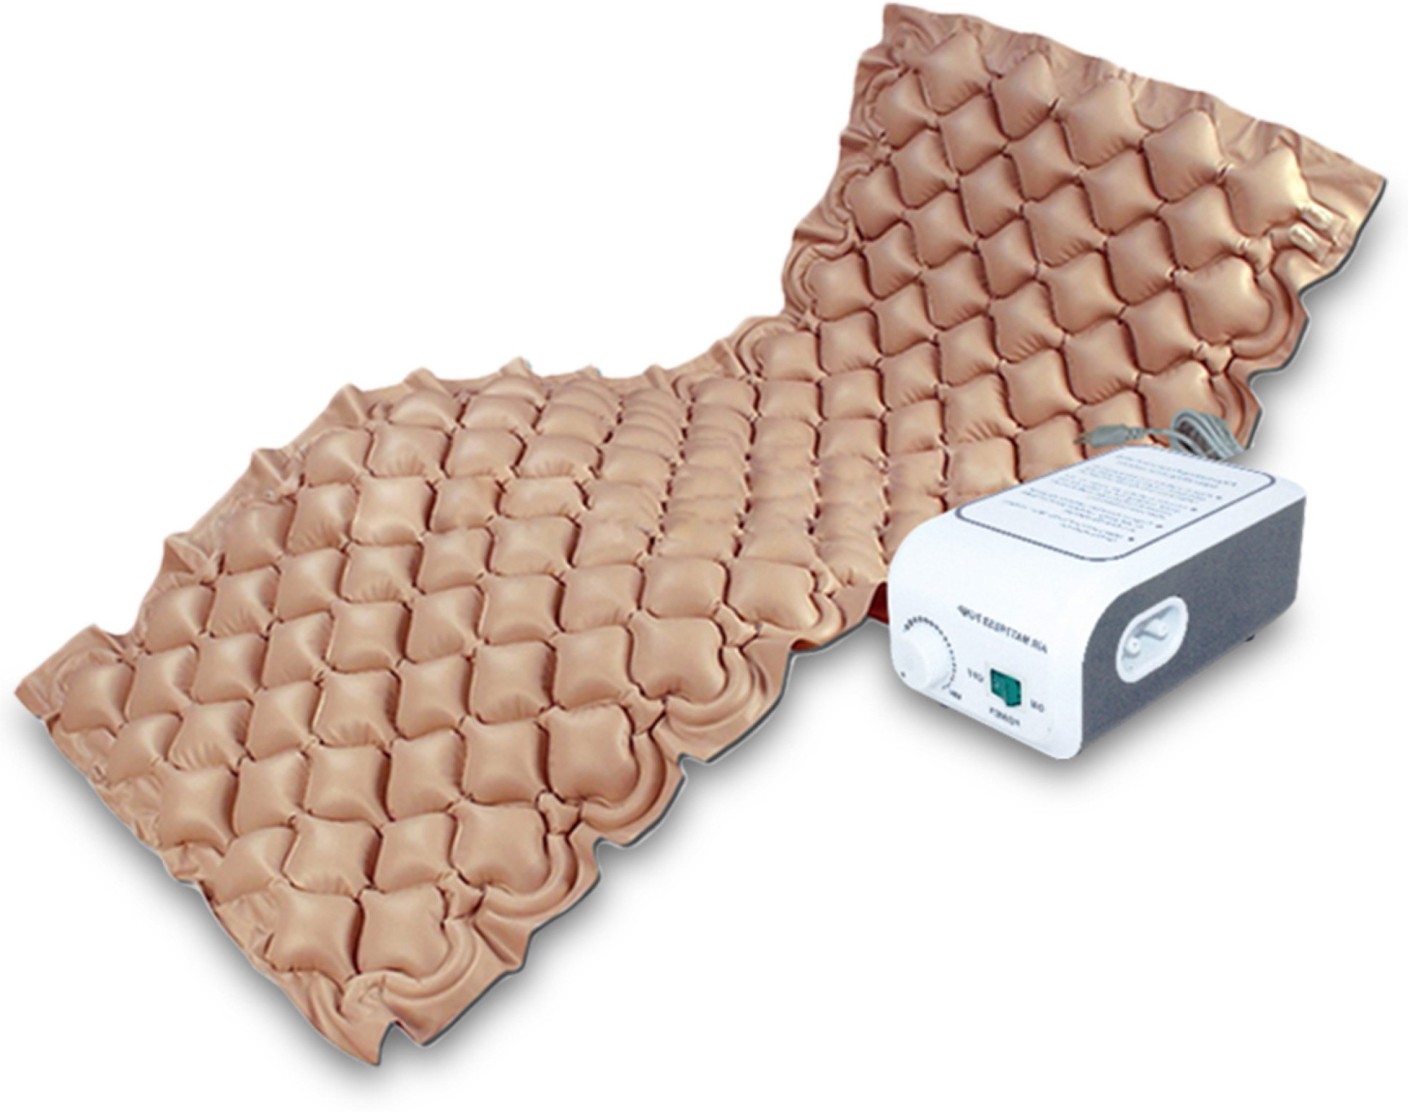 mattress pad 37.5 x 25.5